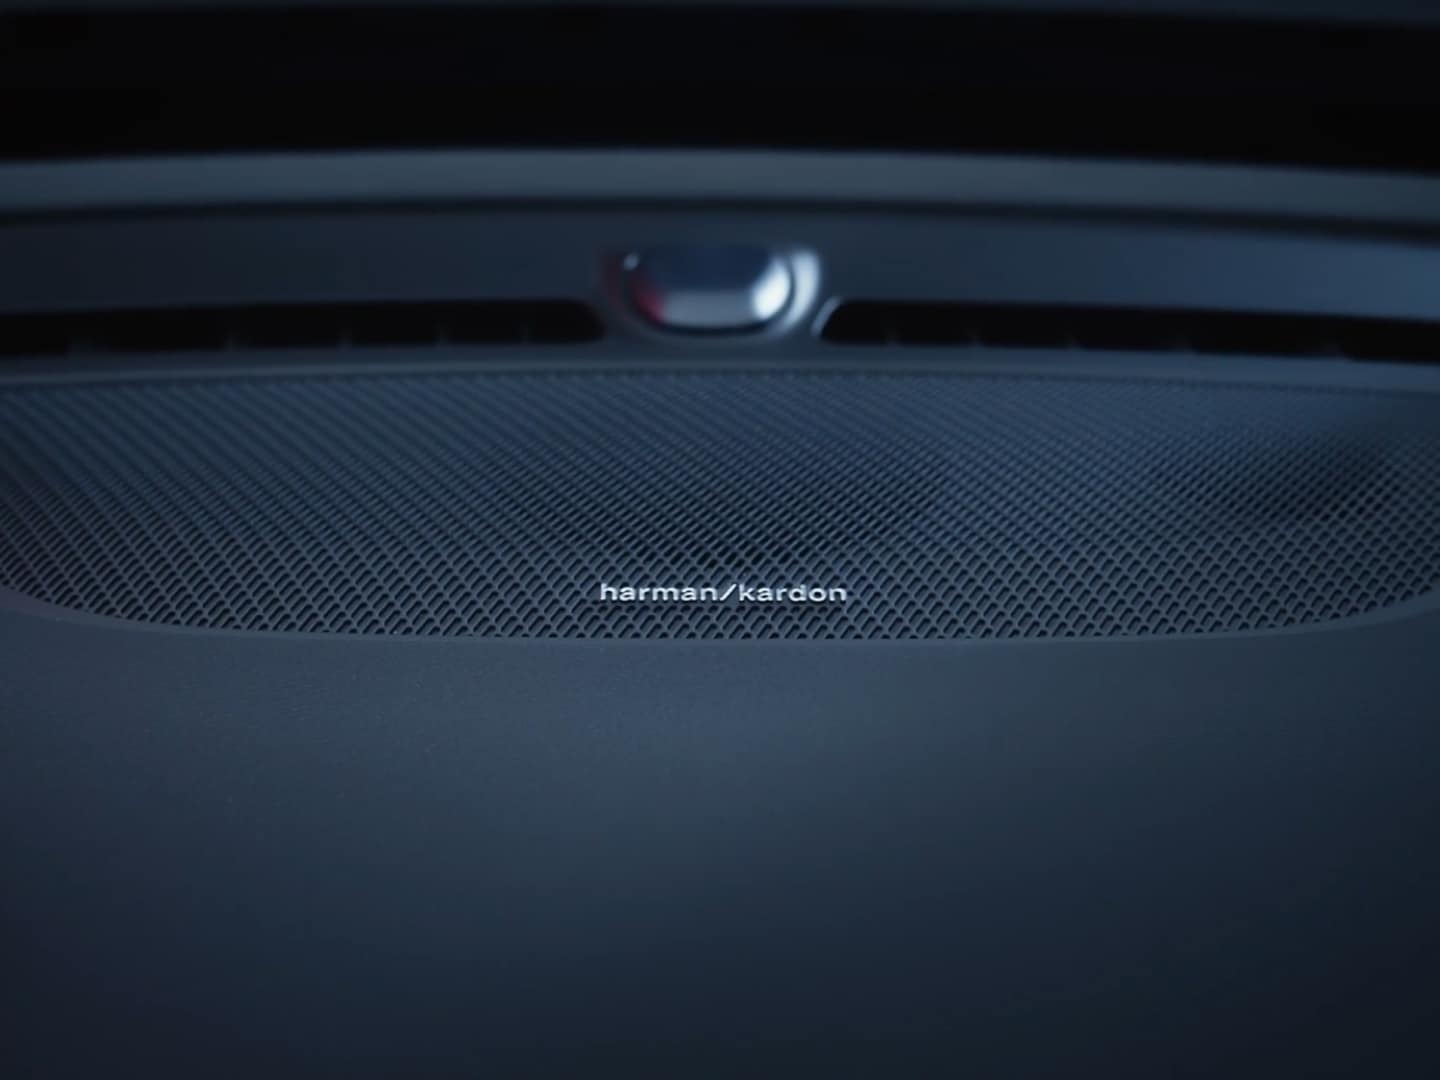 Harman Kardon hangszóró, amely a Volvo EC40 modellben elérhető prémium hangrendszer része.